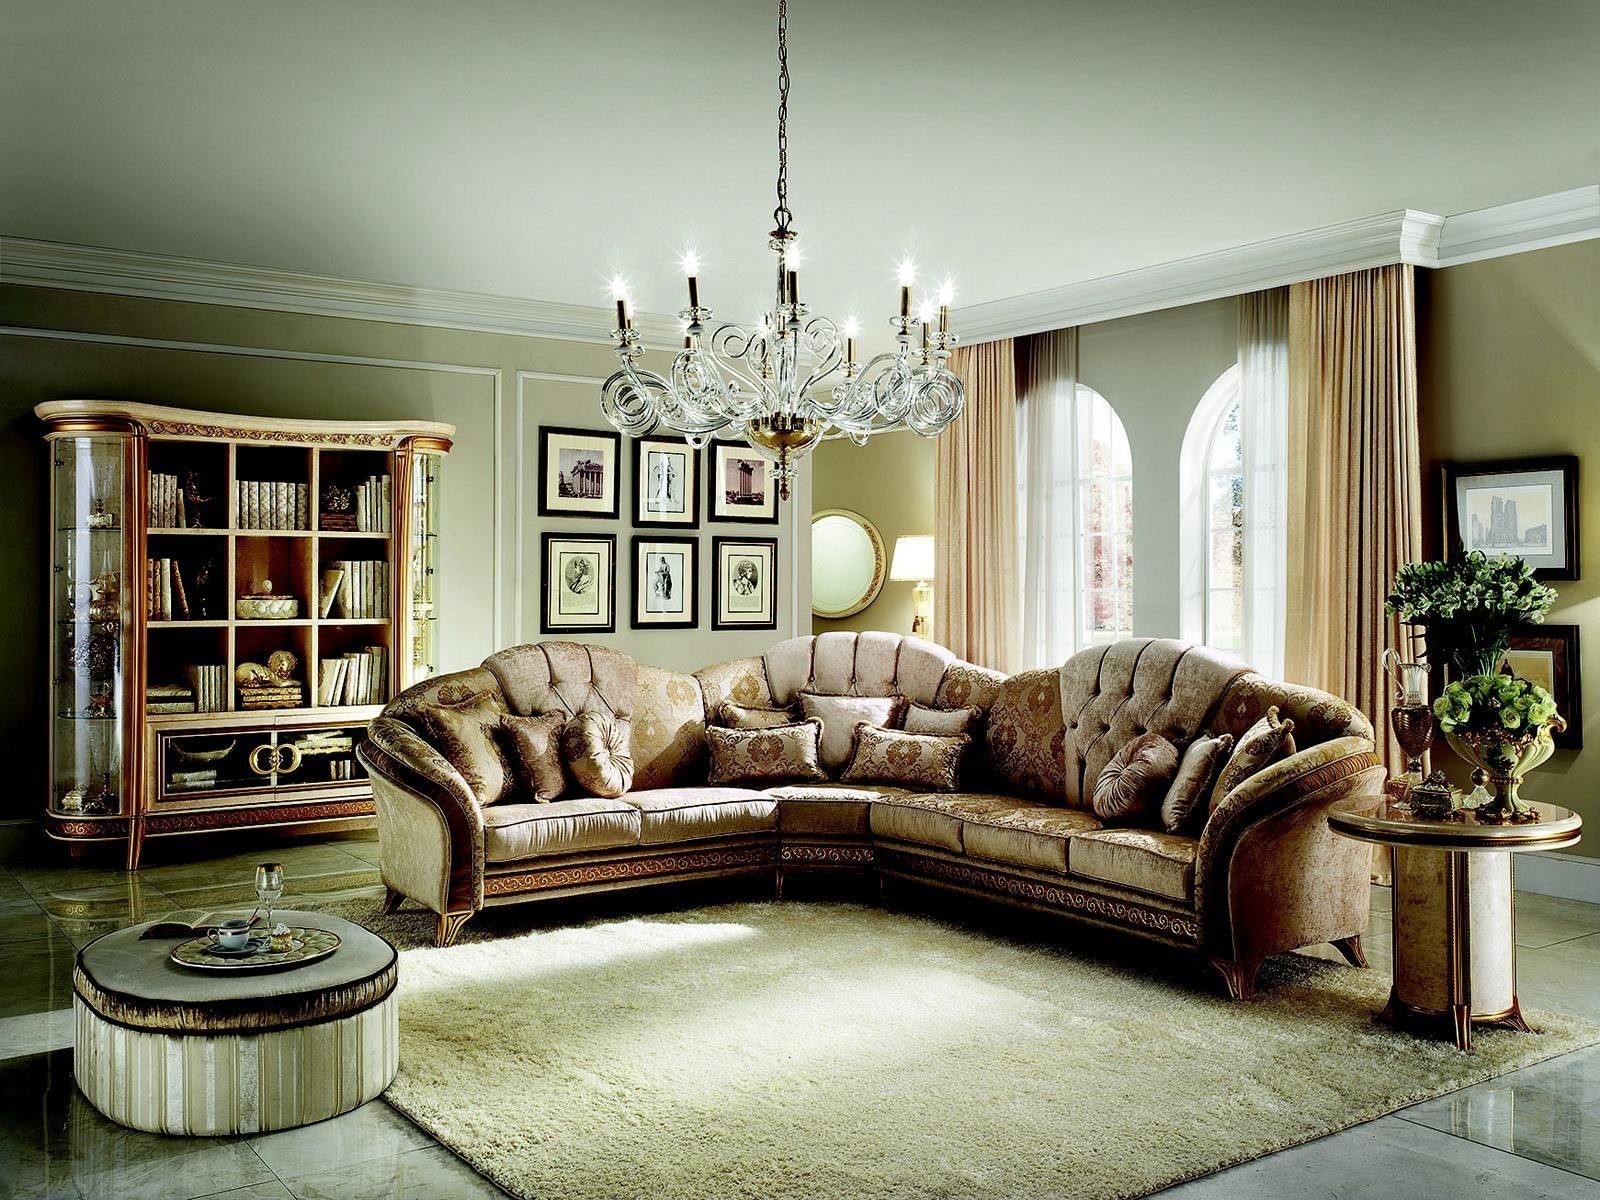 JVmoebel Ecksofa Luxus Ecksofa Klassische Wohnzimmer Couch Polstermöbel Neu, Made in Europe